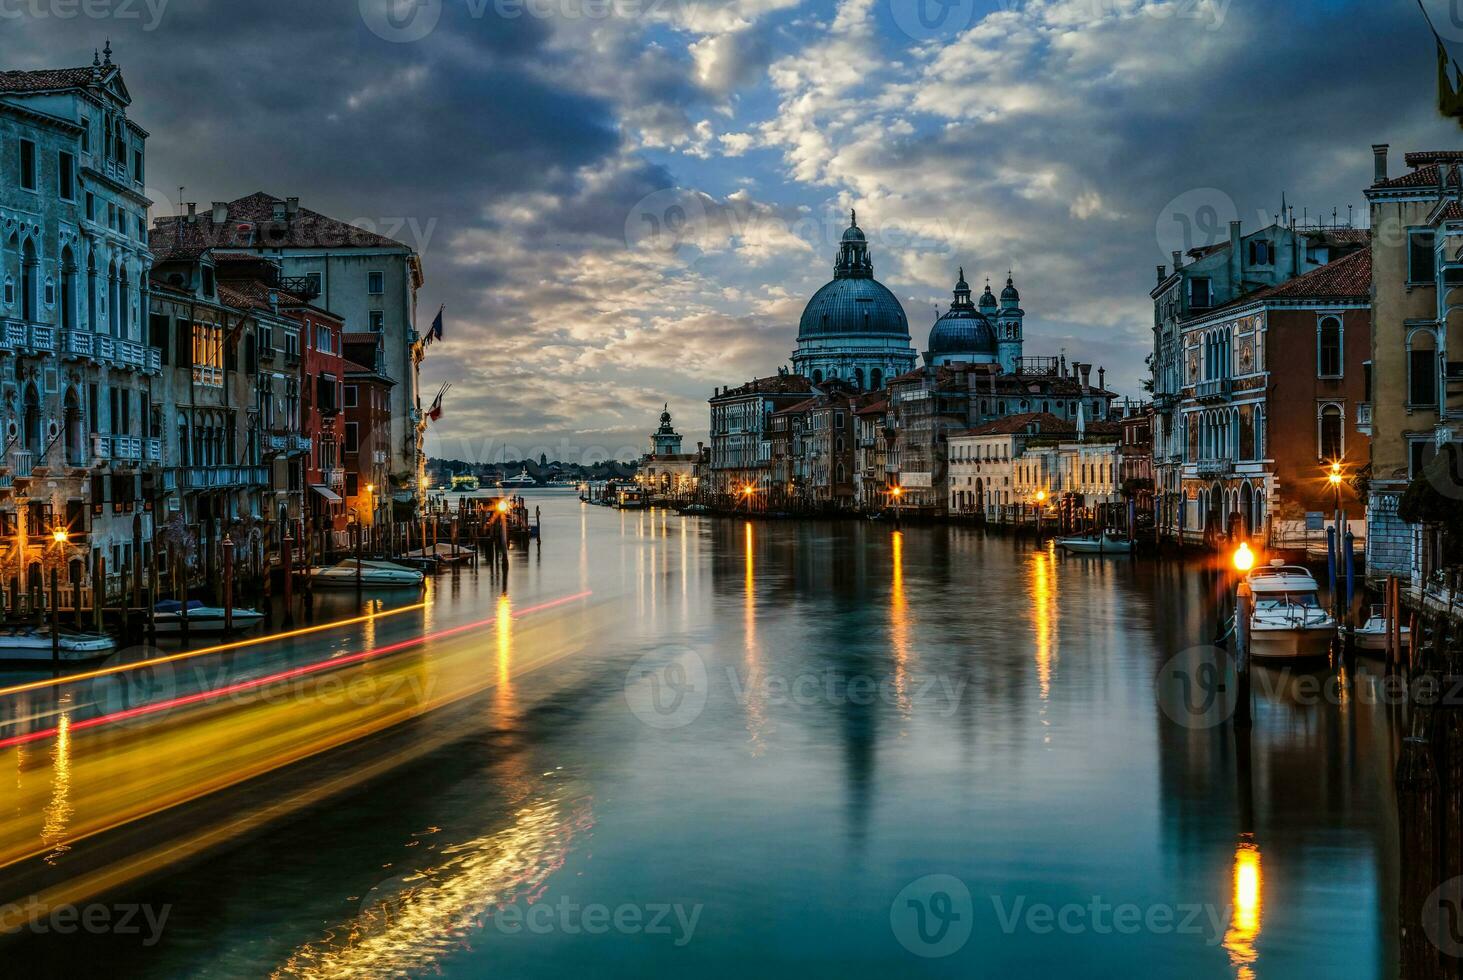 Grand Canal and Basilica Santa Maria della Salute, Venice, Italy photo